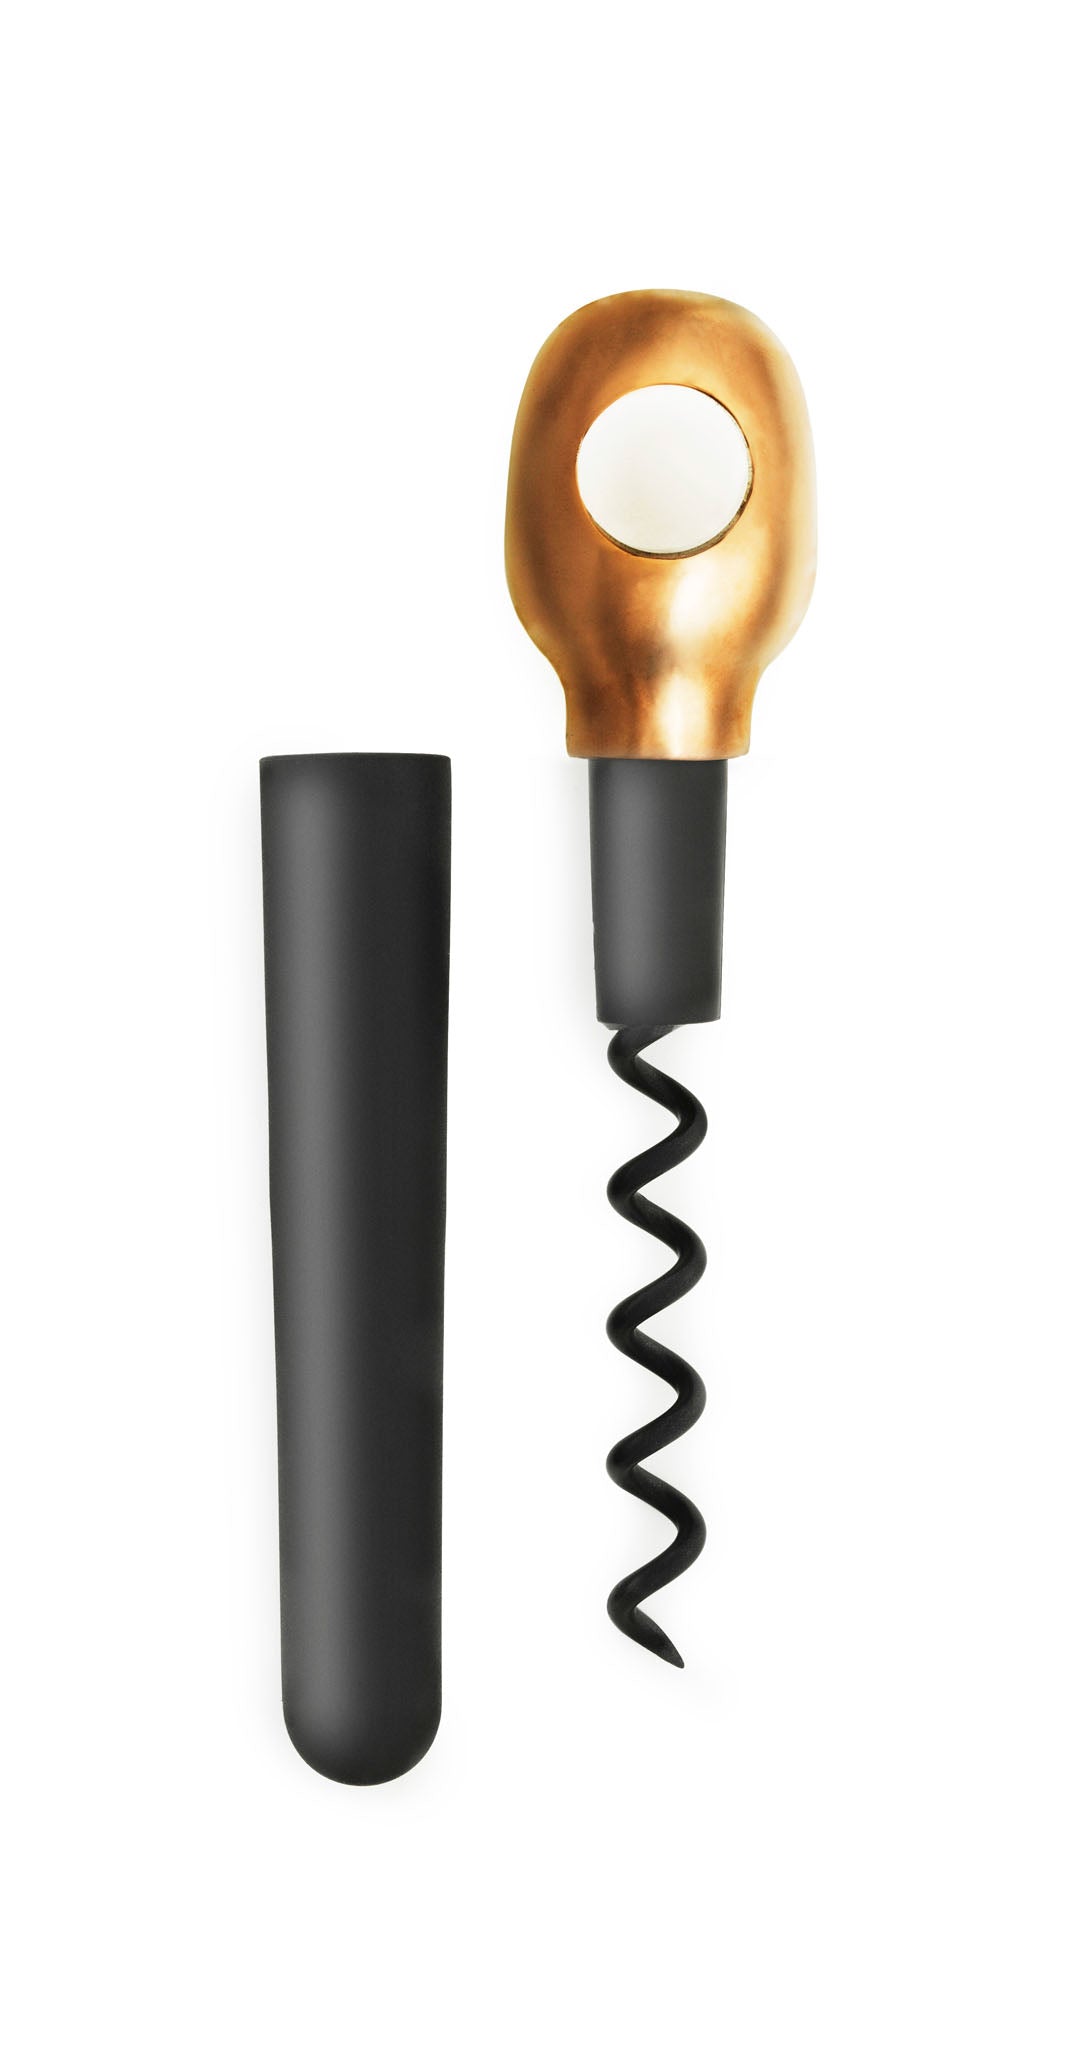 Basic Korkenzieher  in Bronze / Schwarz präsentiert im Onlineshop von KAQTU Design AG. Weinzubehör ist von Normann Copenhagen